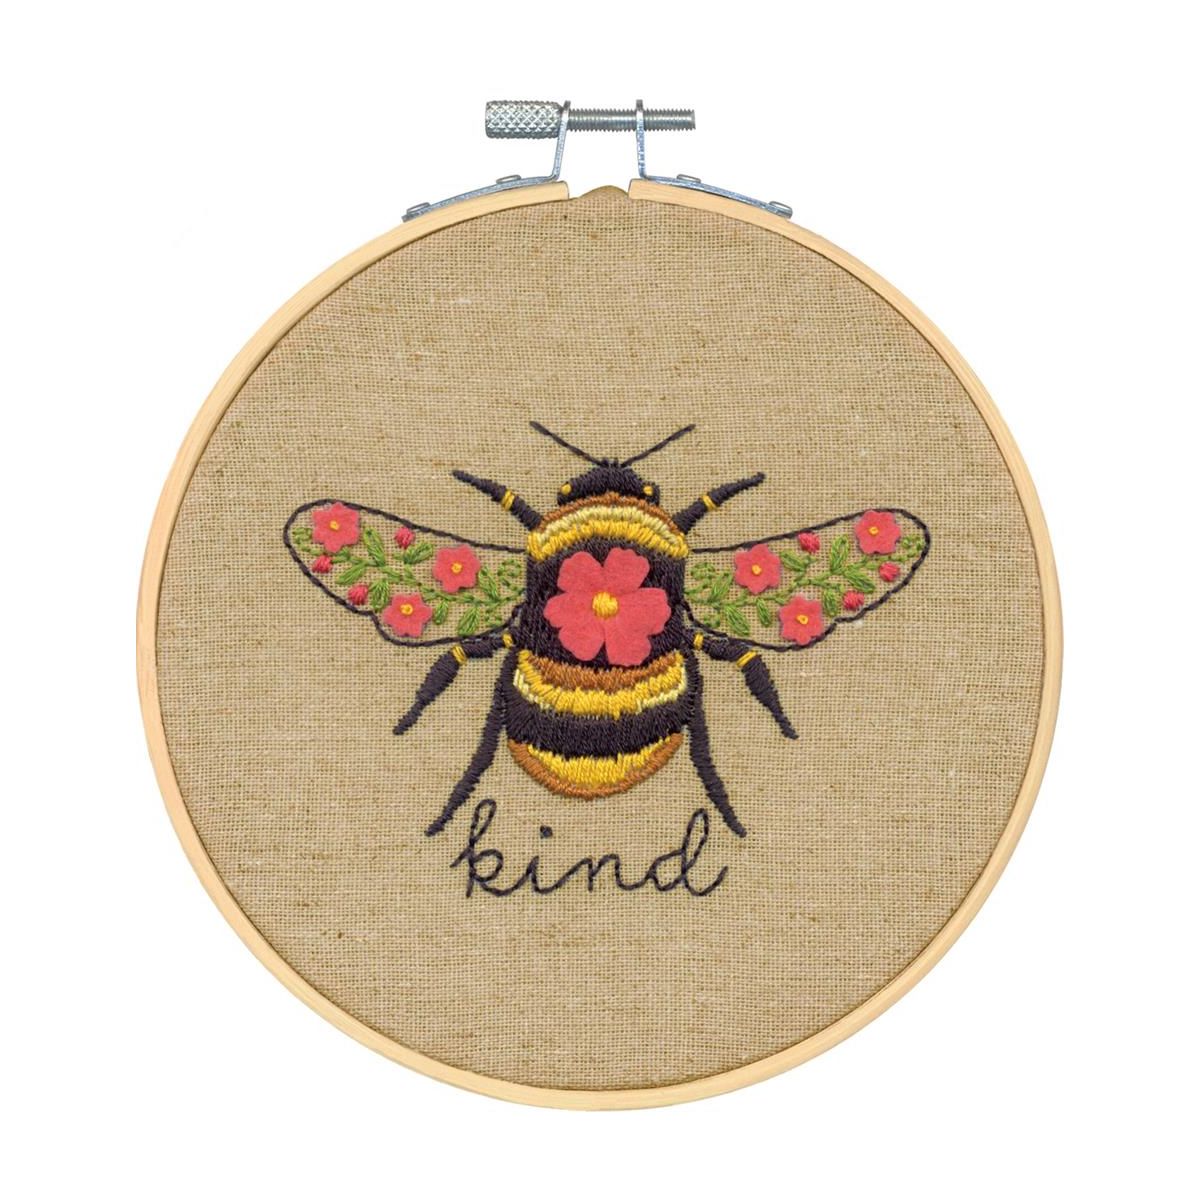 Bedreven voor mij Verfijning Bee Kind - Dimensions borduurpakket - Iris Borduurt